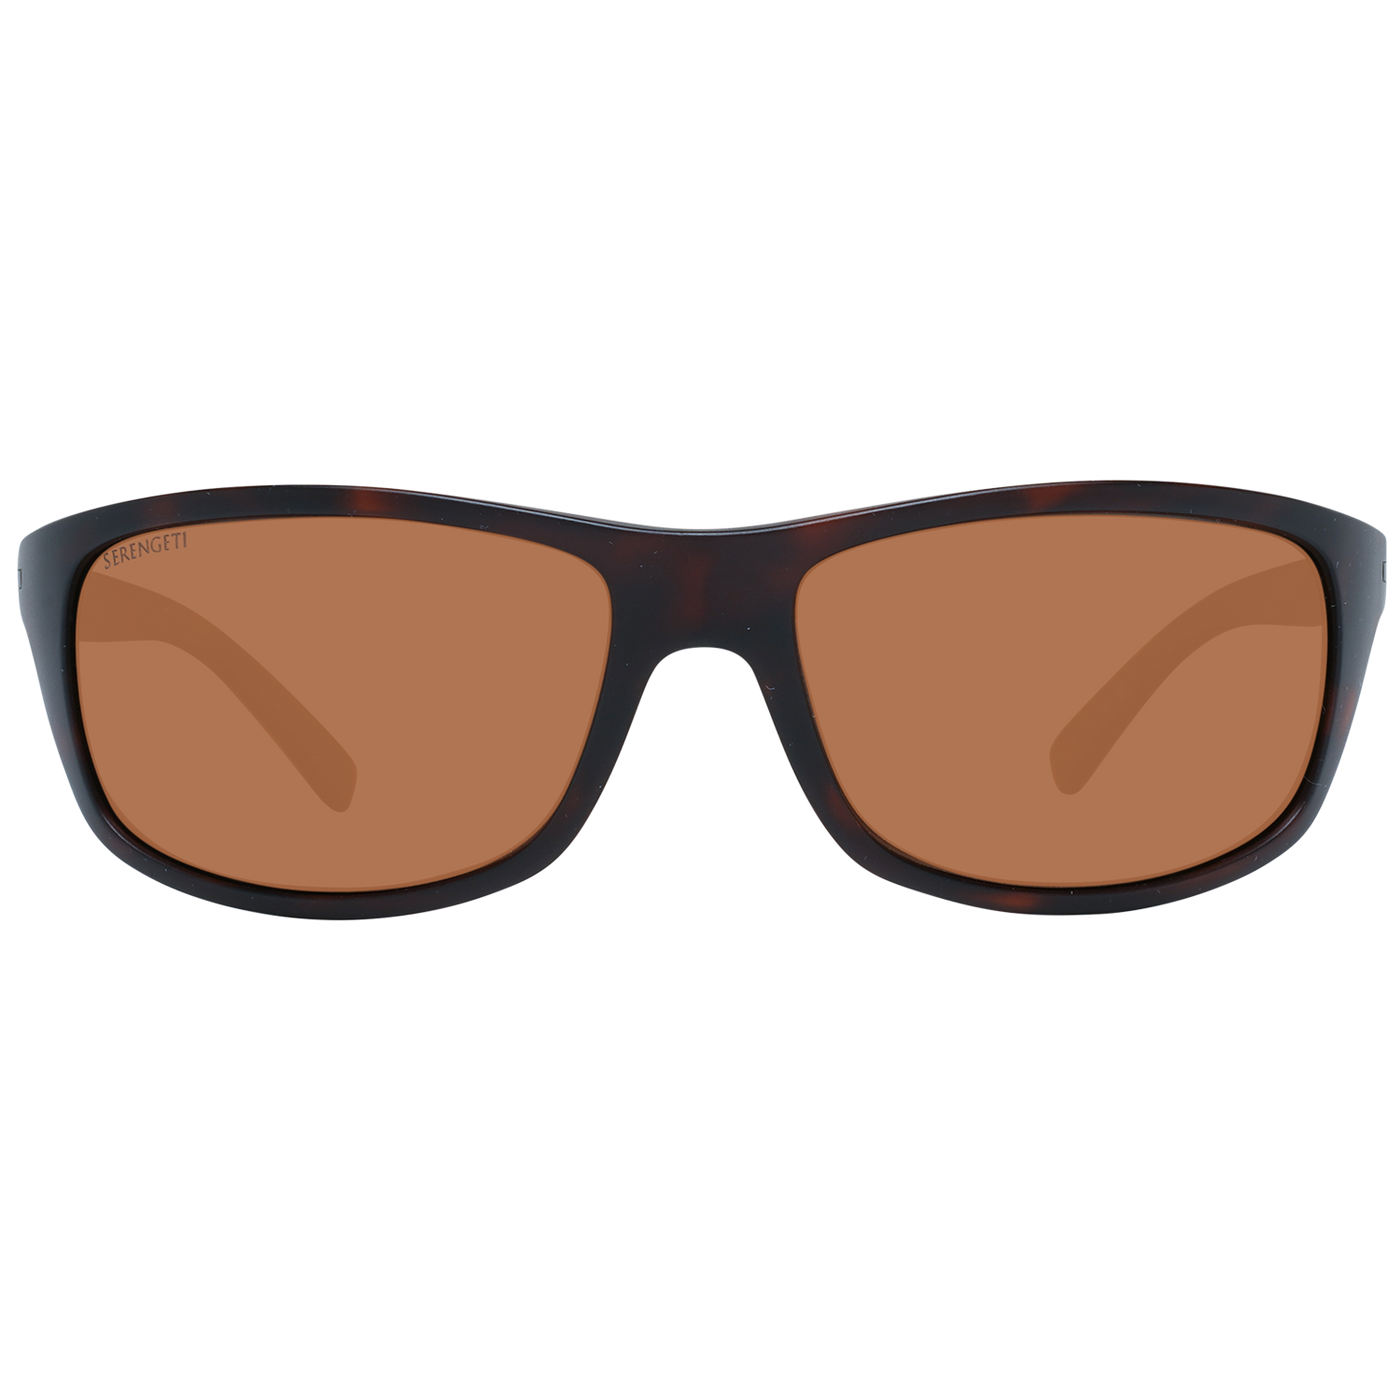 Serengeti Brown Unisex Sunglasses